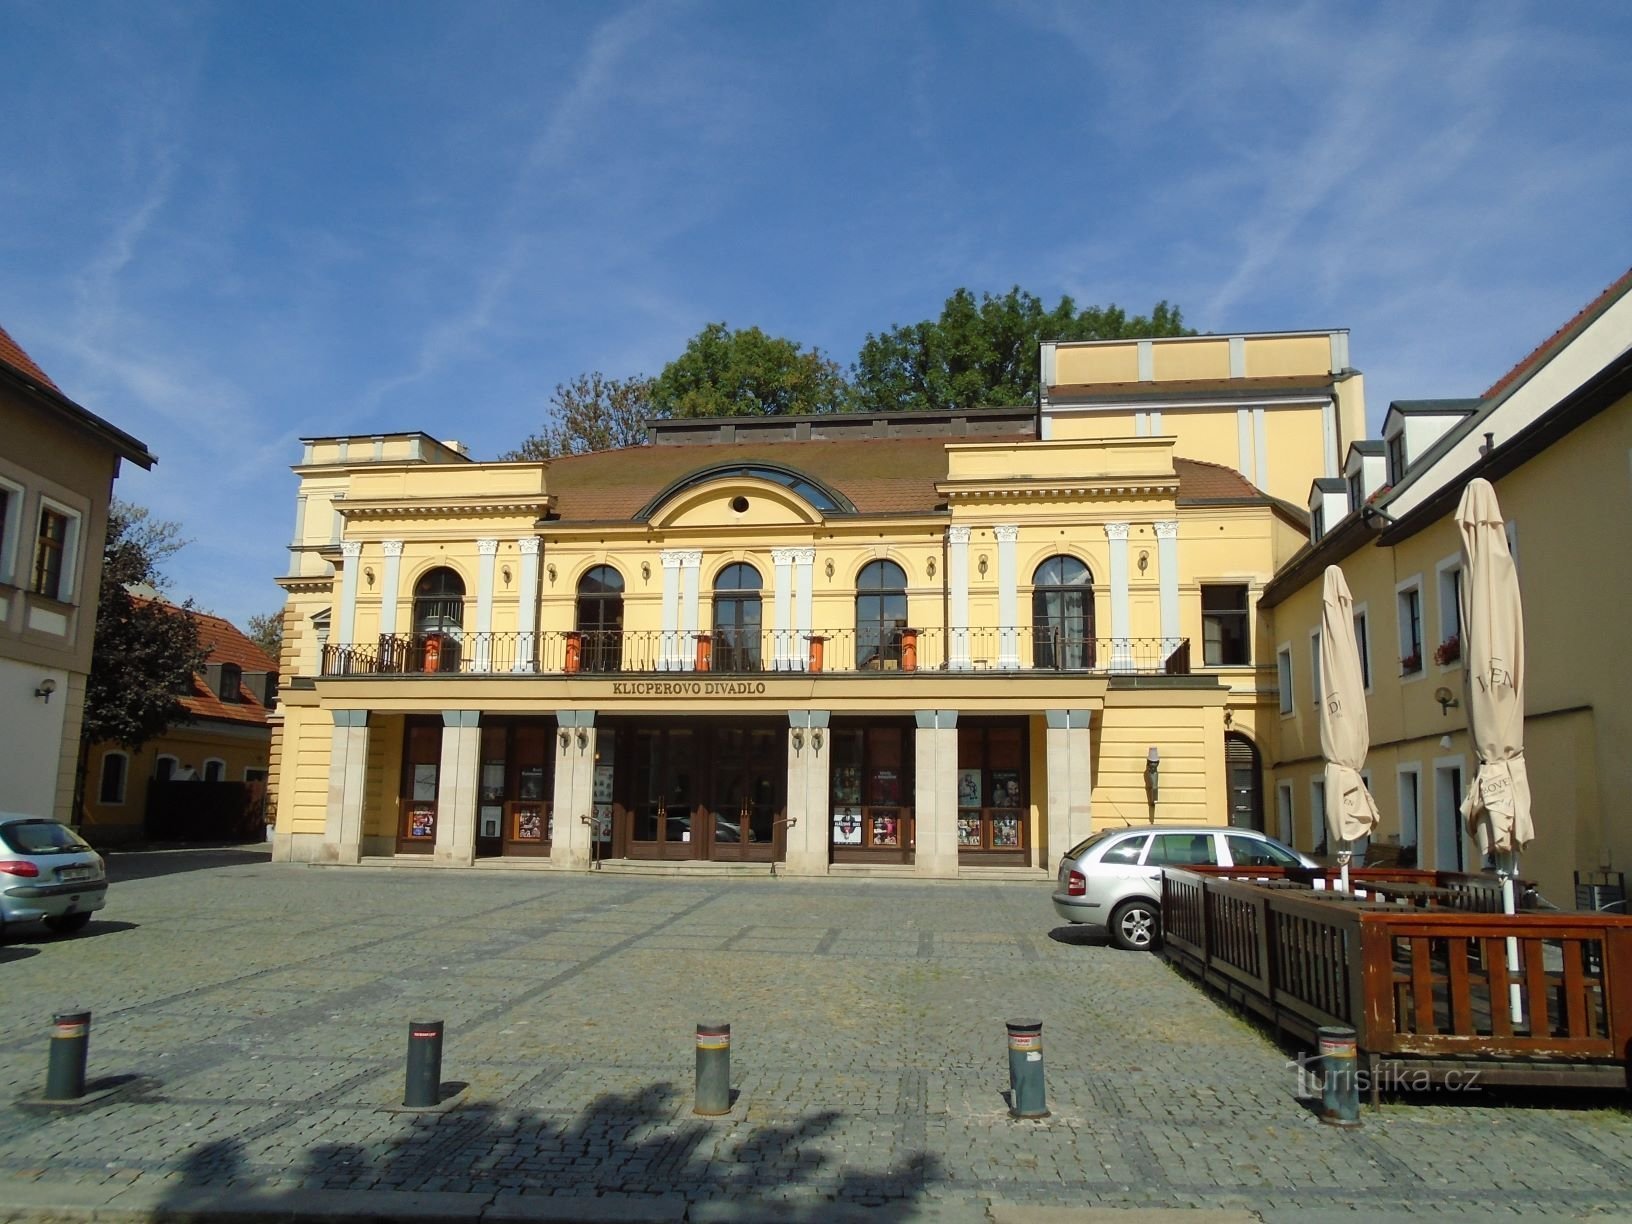 Nhà hát Klicper (Hradec Králové, 16.9.2018/XNUMX/XNUMX)